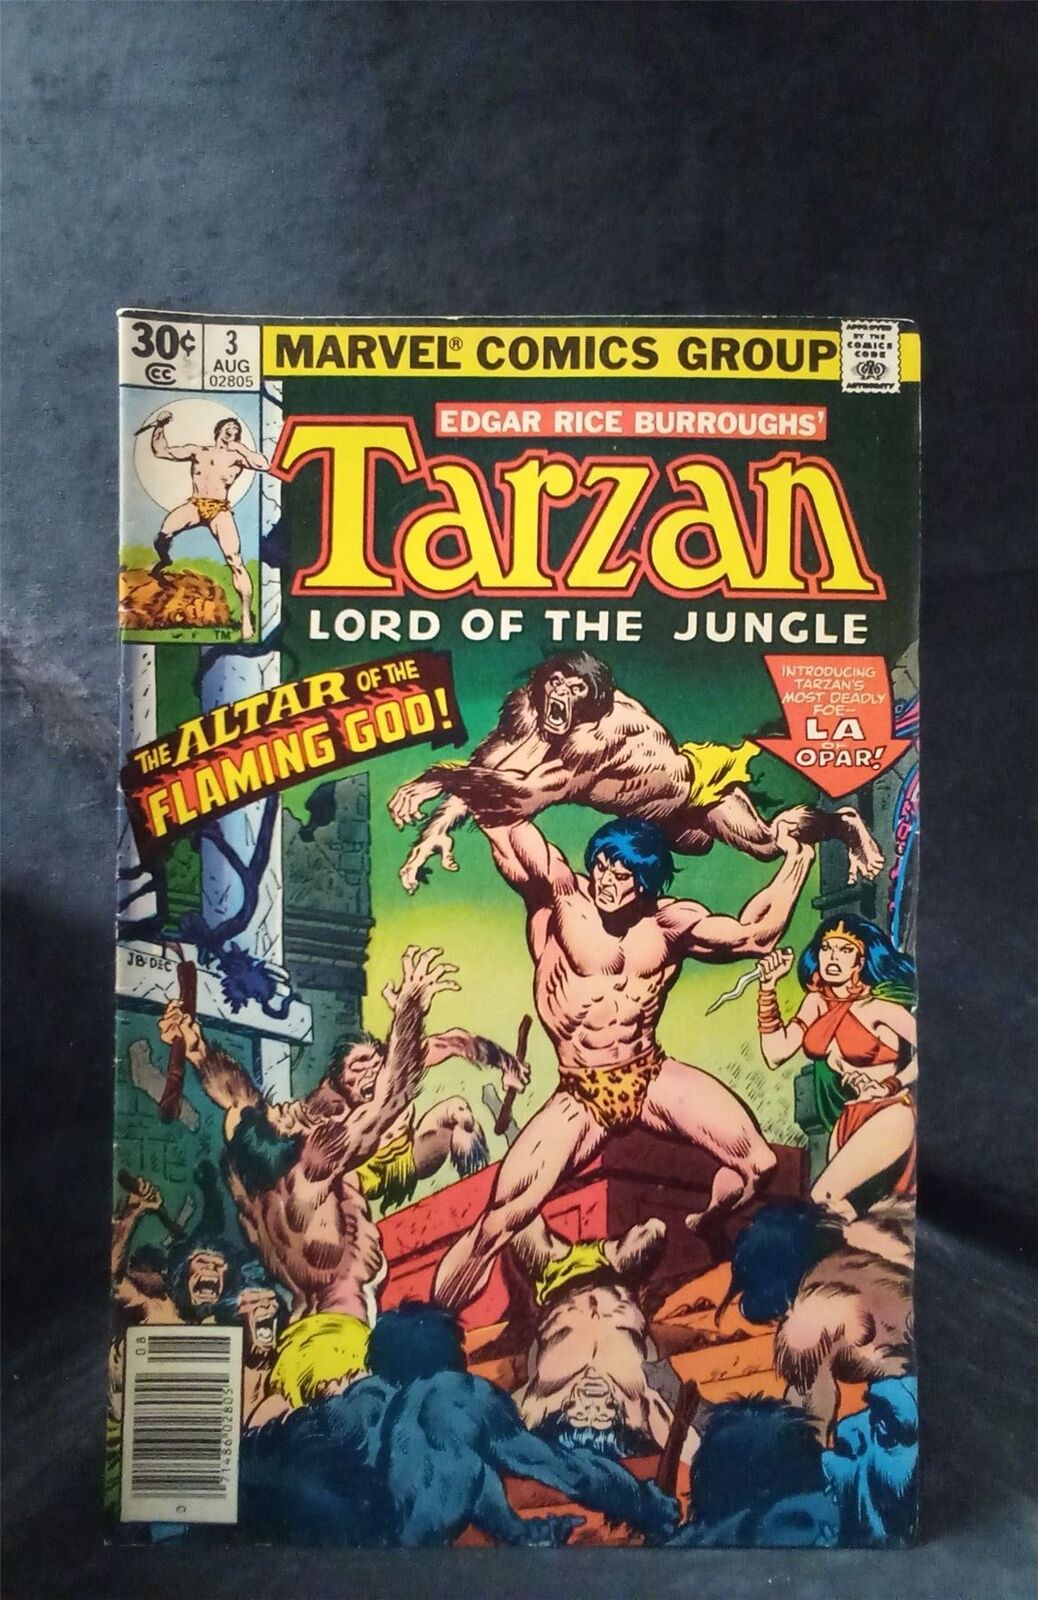 Tarzan #3 1977 Marvel Comics Comic Book 